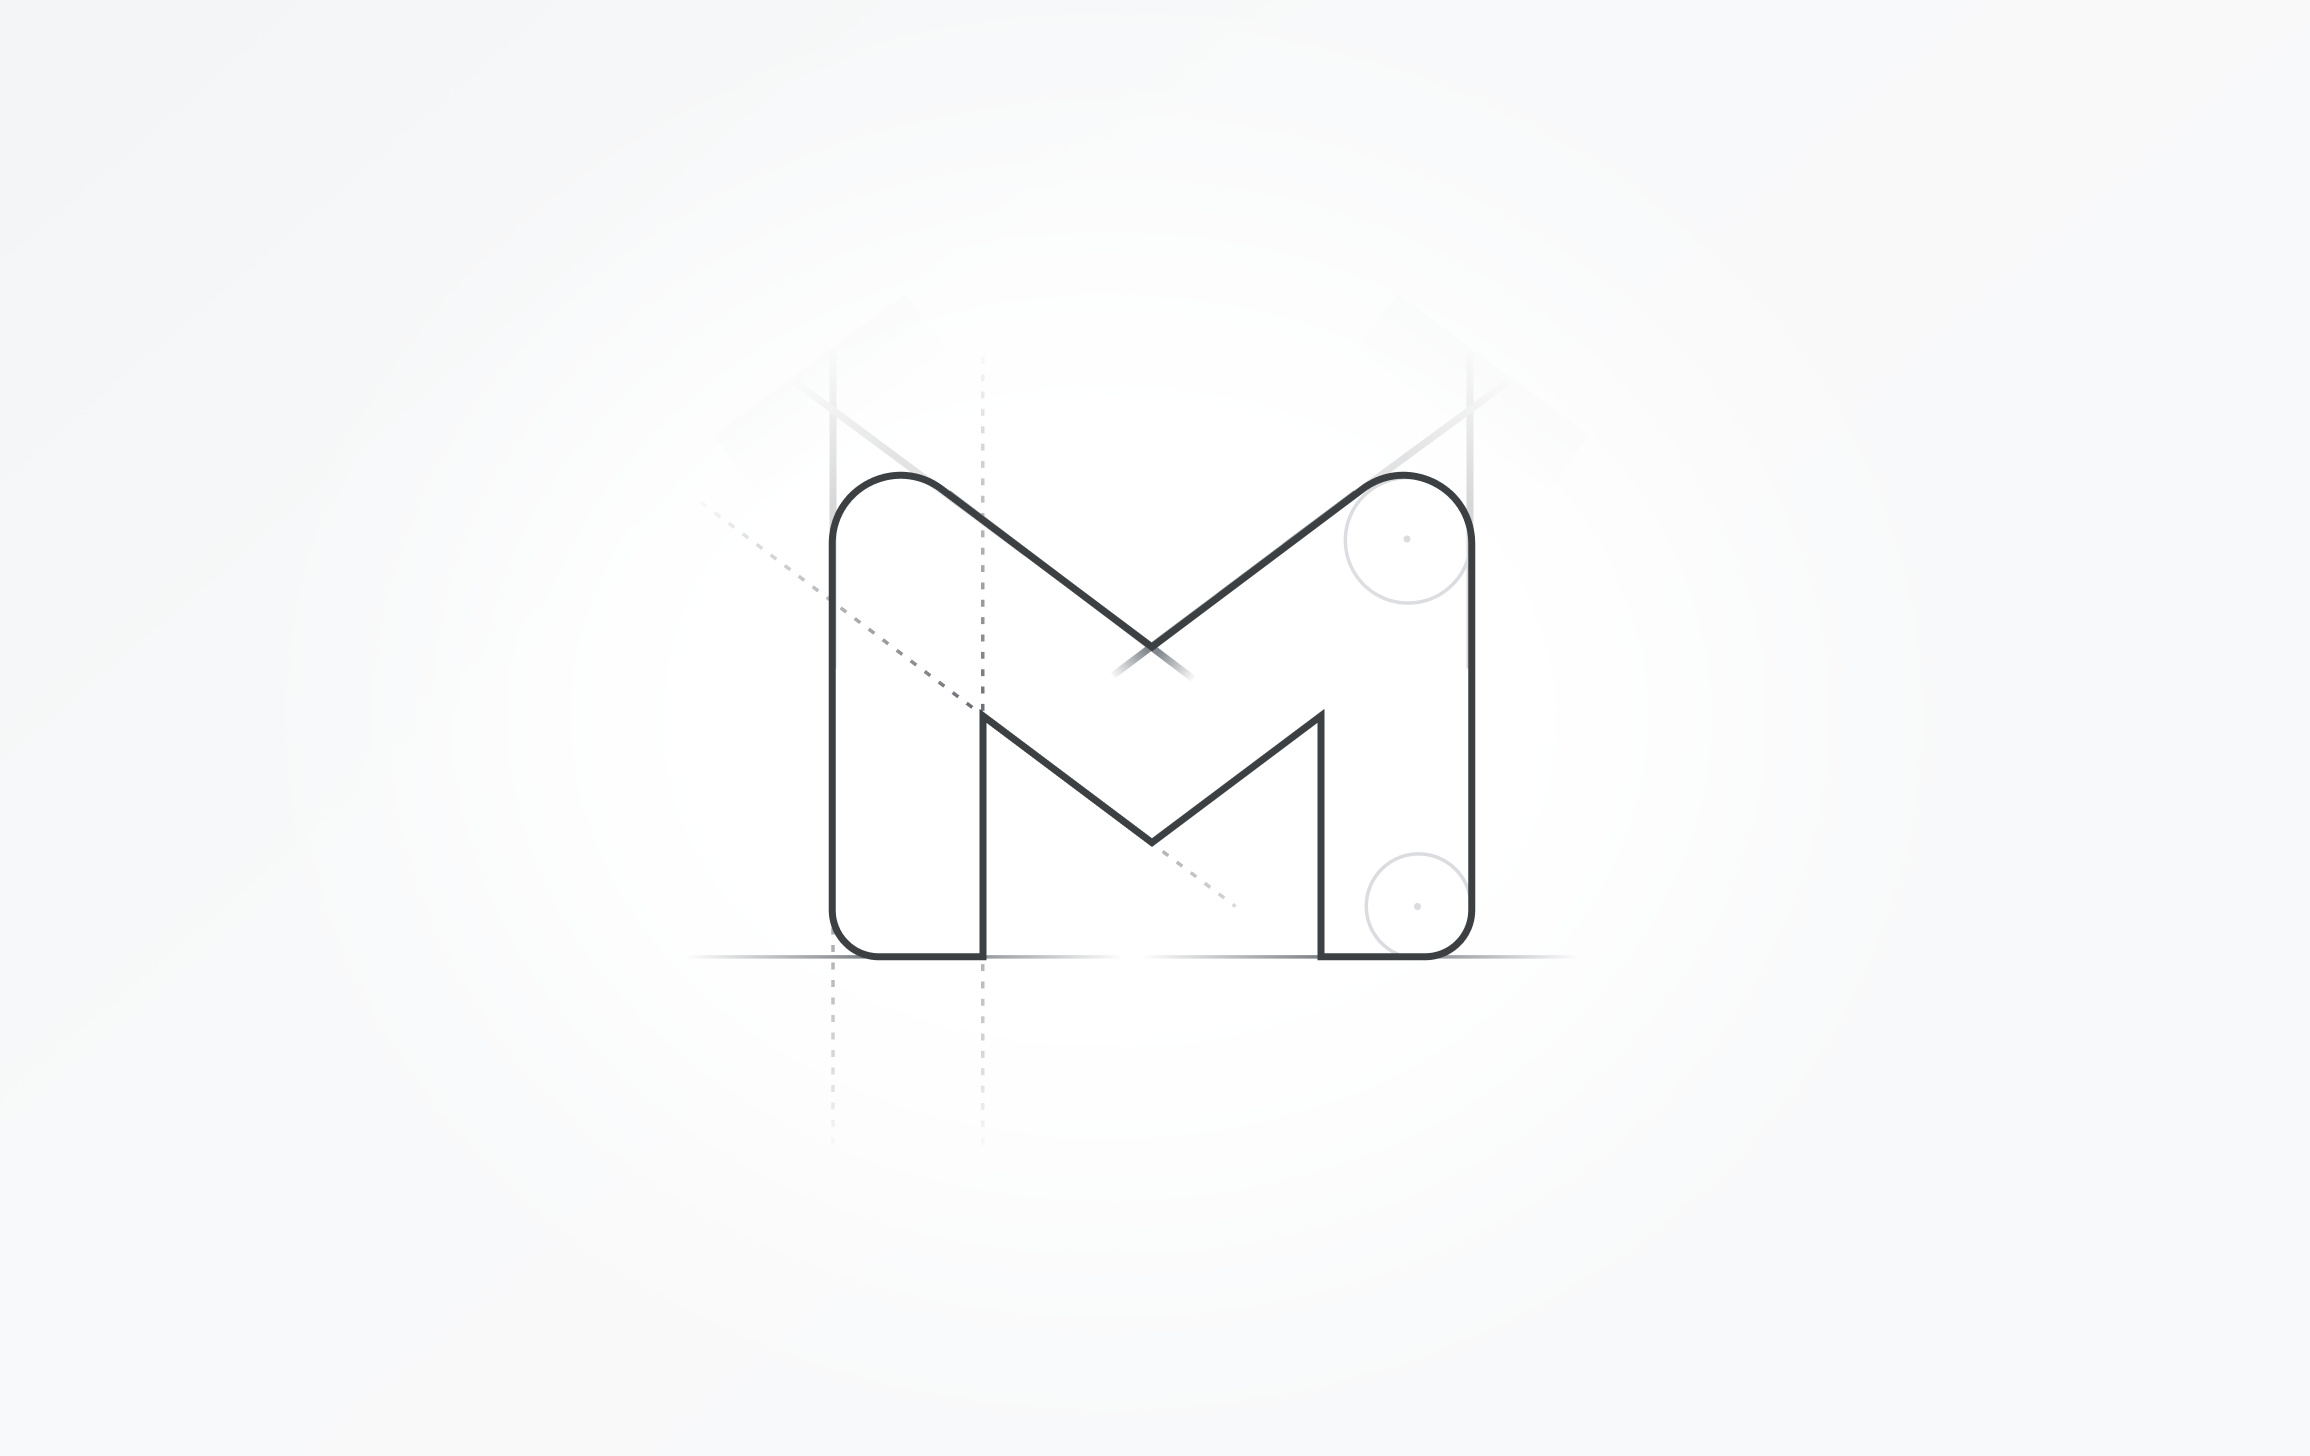 谷歌邮件服务 gmail 将更新 logo 外观